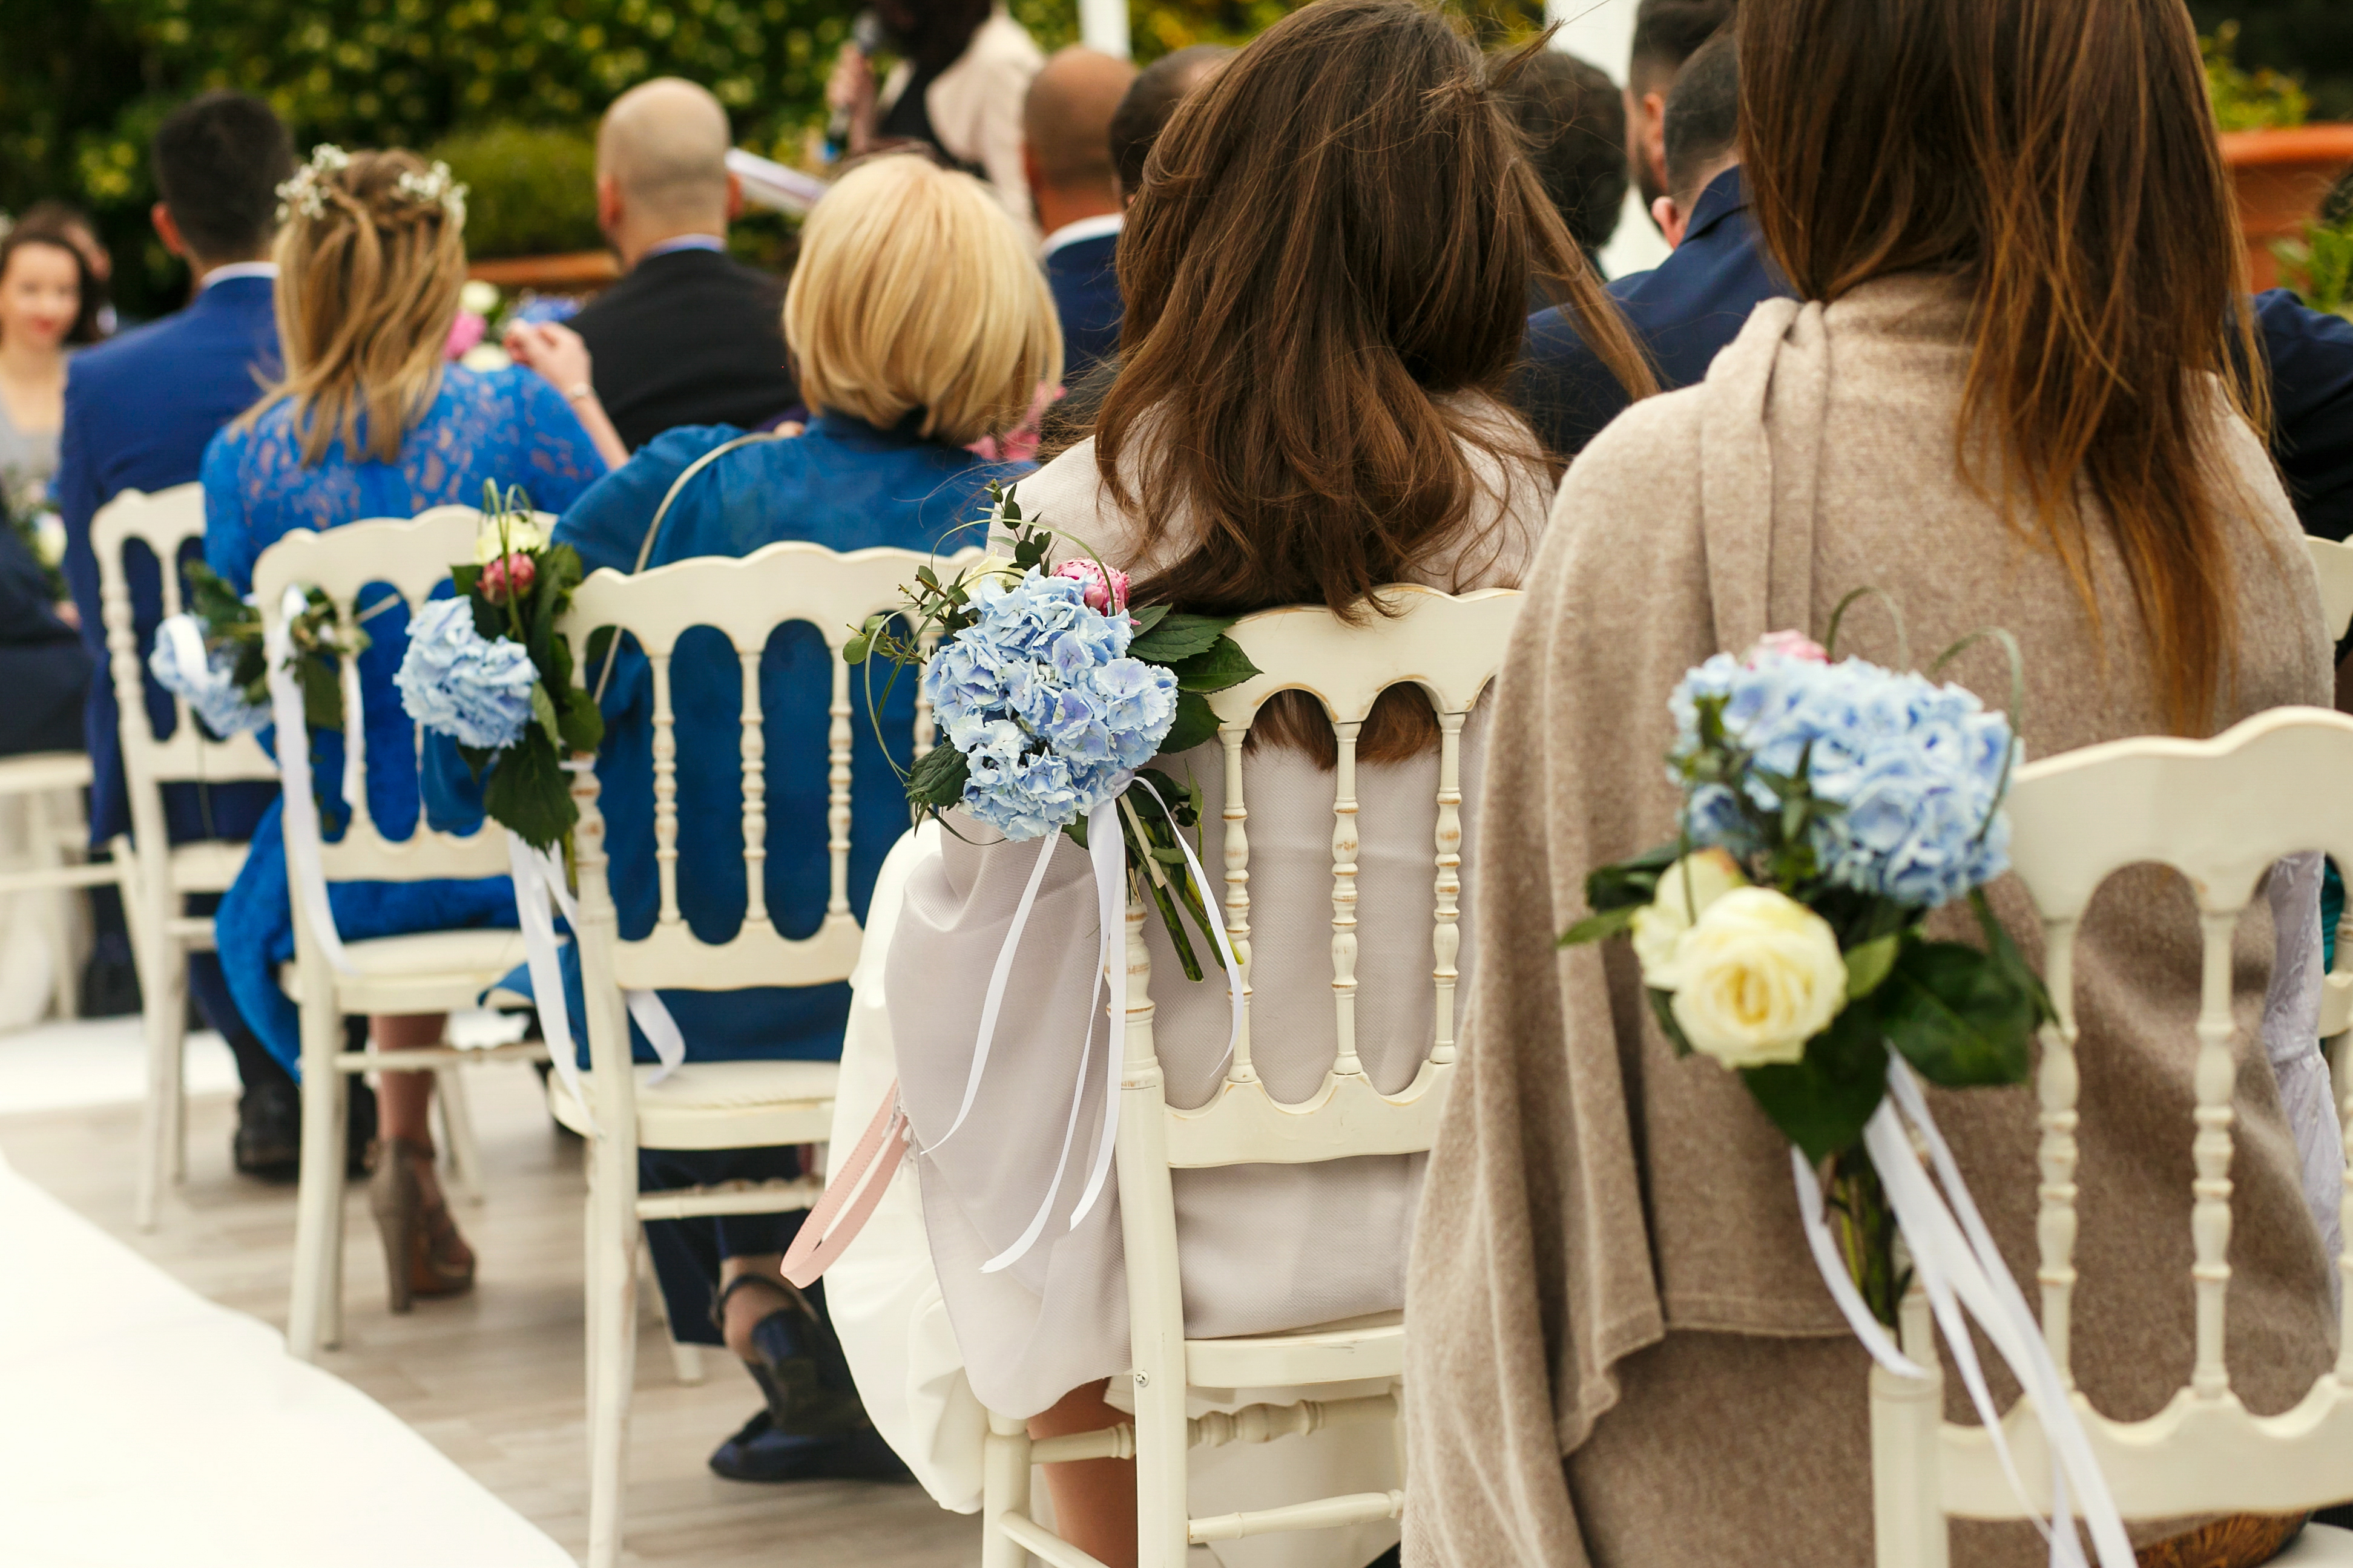 Invitados sentados durante una ceremonia nupcial | Foto: Shutterstock